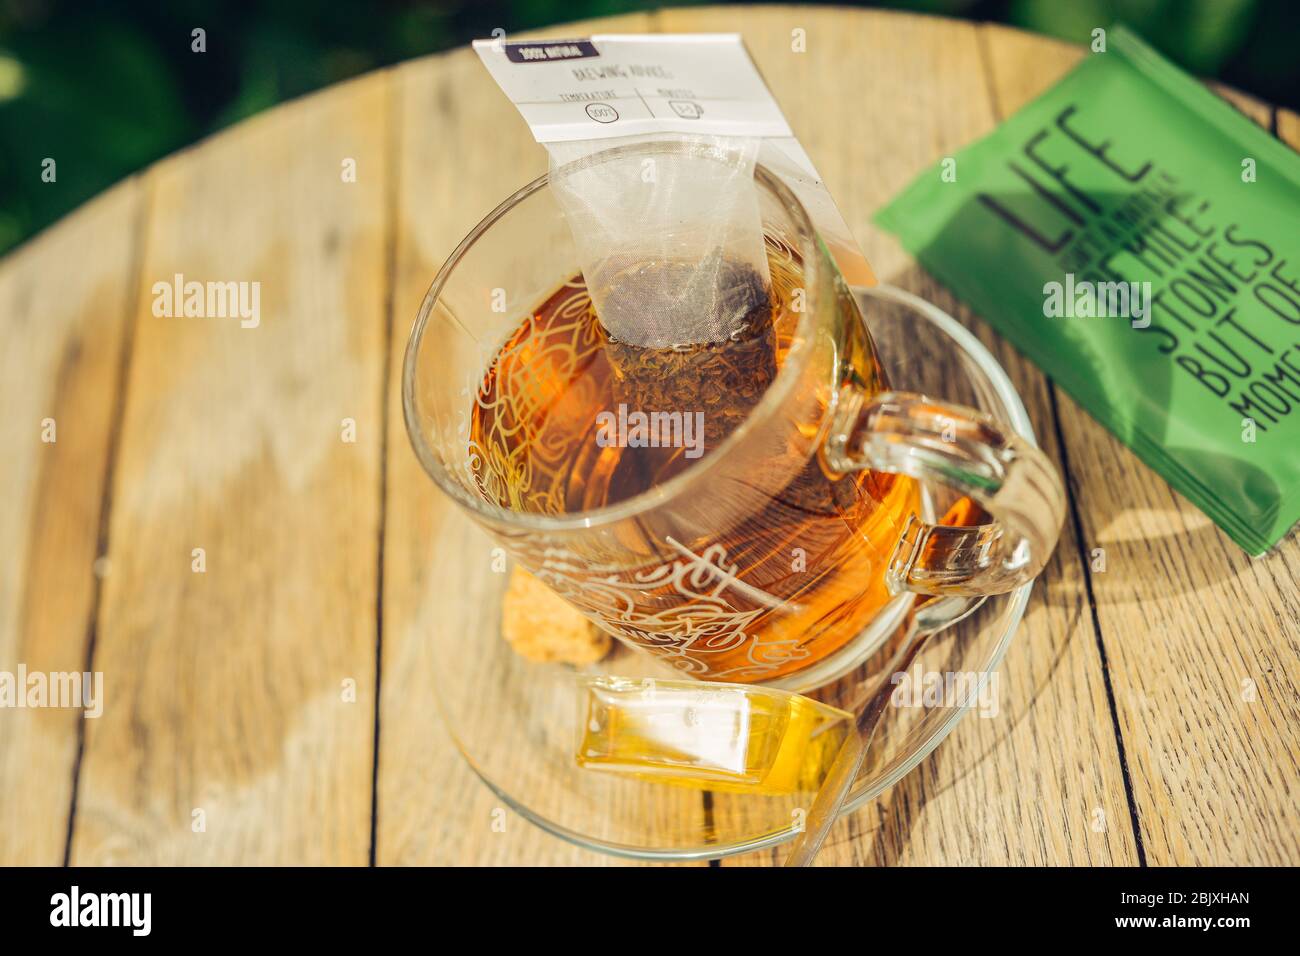 Nahaufnahme von Tee in Glas Tasse mit Teebeutel, Honig, Plätzchen, Zucker. Rustikaler Holztisch mit runder Tischuntergrund. Sonnenlicht im Freien. Lifestyle. Lebenszitat. Stockfoto